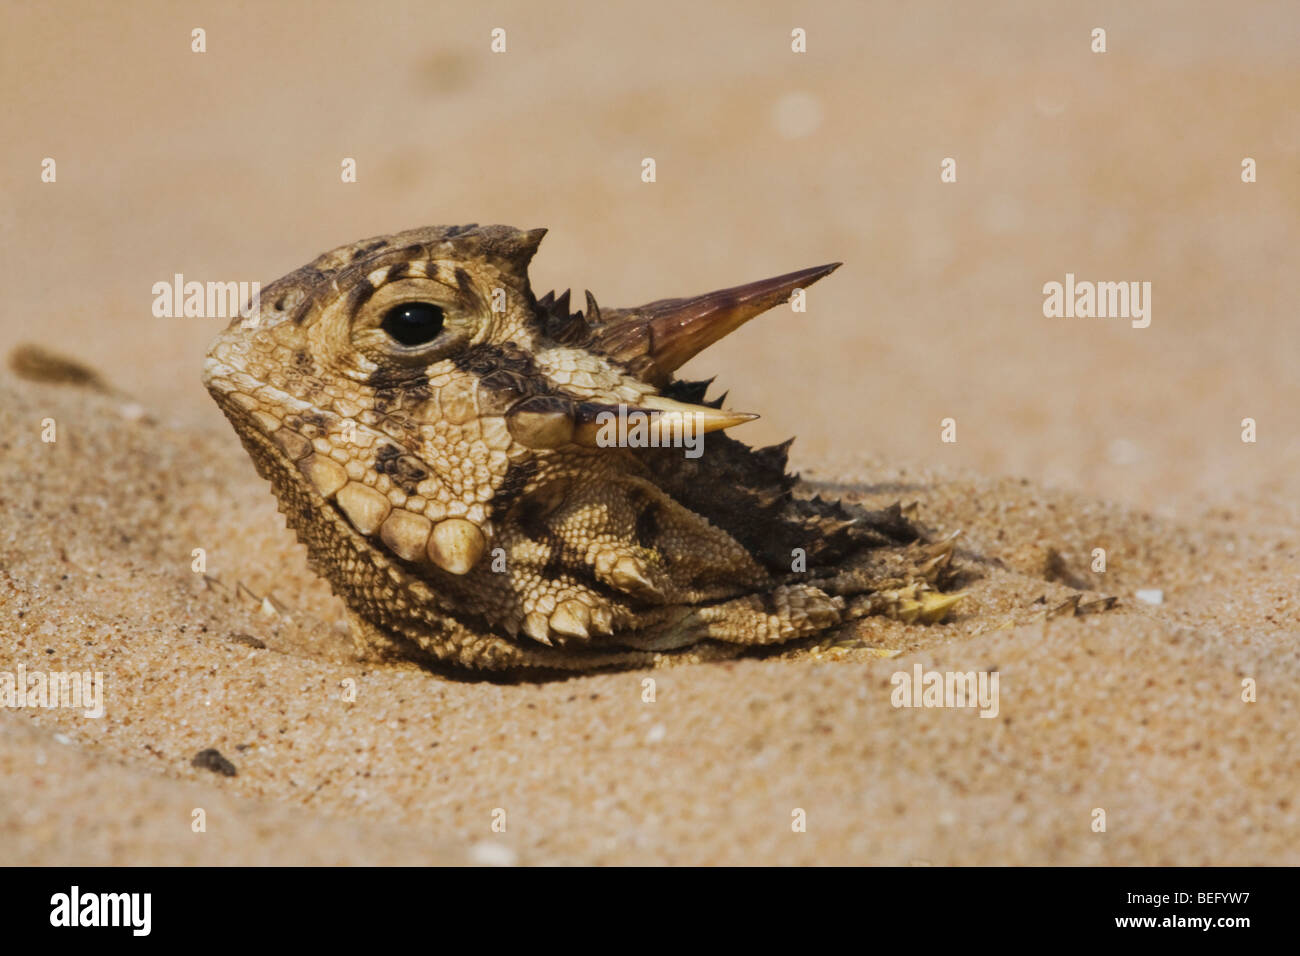 Texas Lagarto cornudo (Phrynosoma cornutum), adultos escondidos en la arena, Valle de Río Grande, Texas, EE.UU. Foto de stock